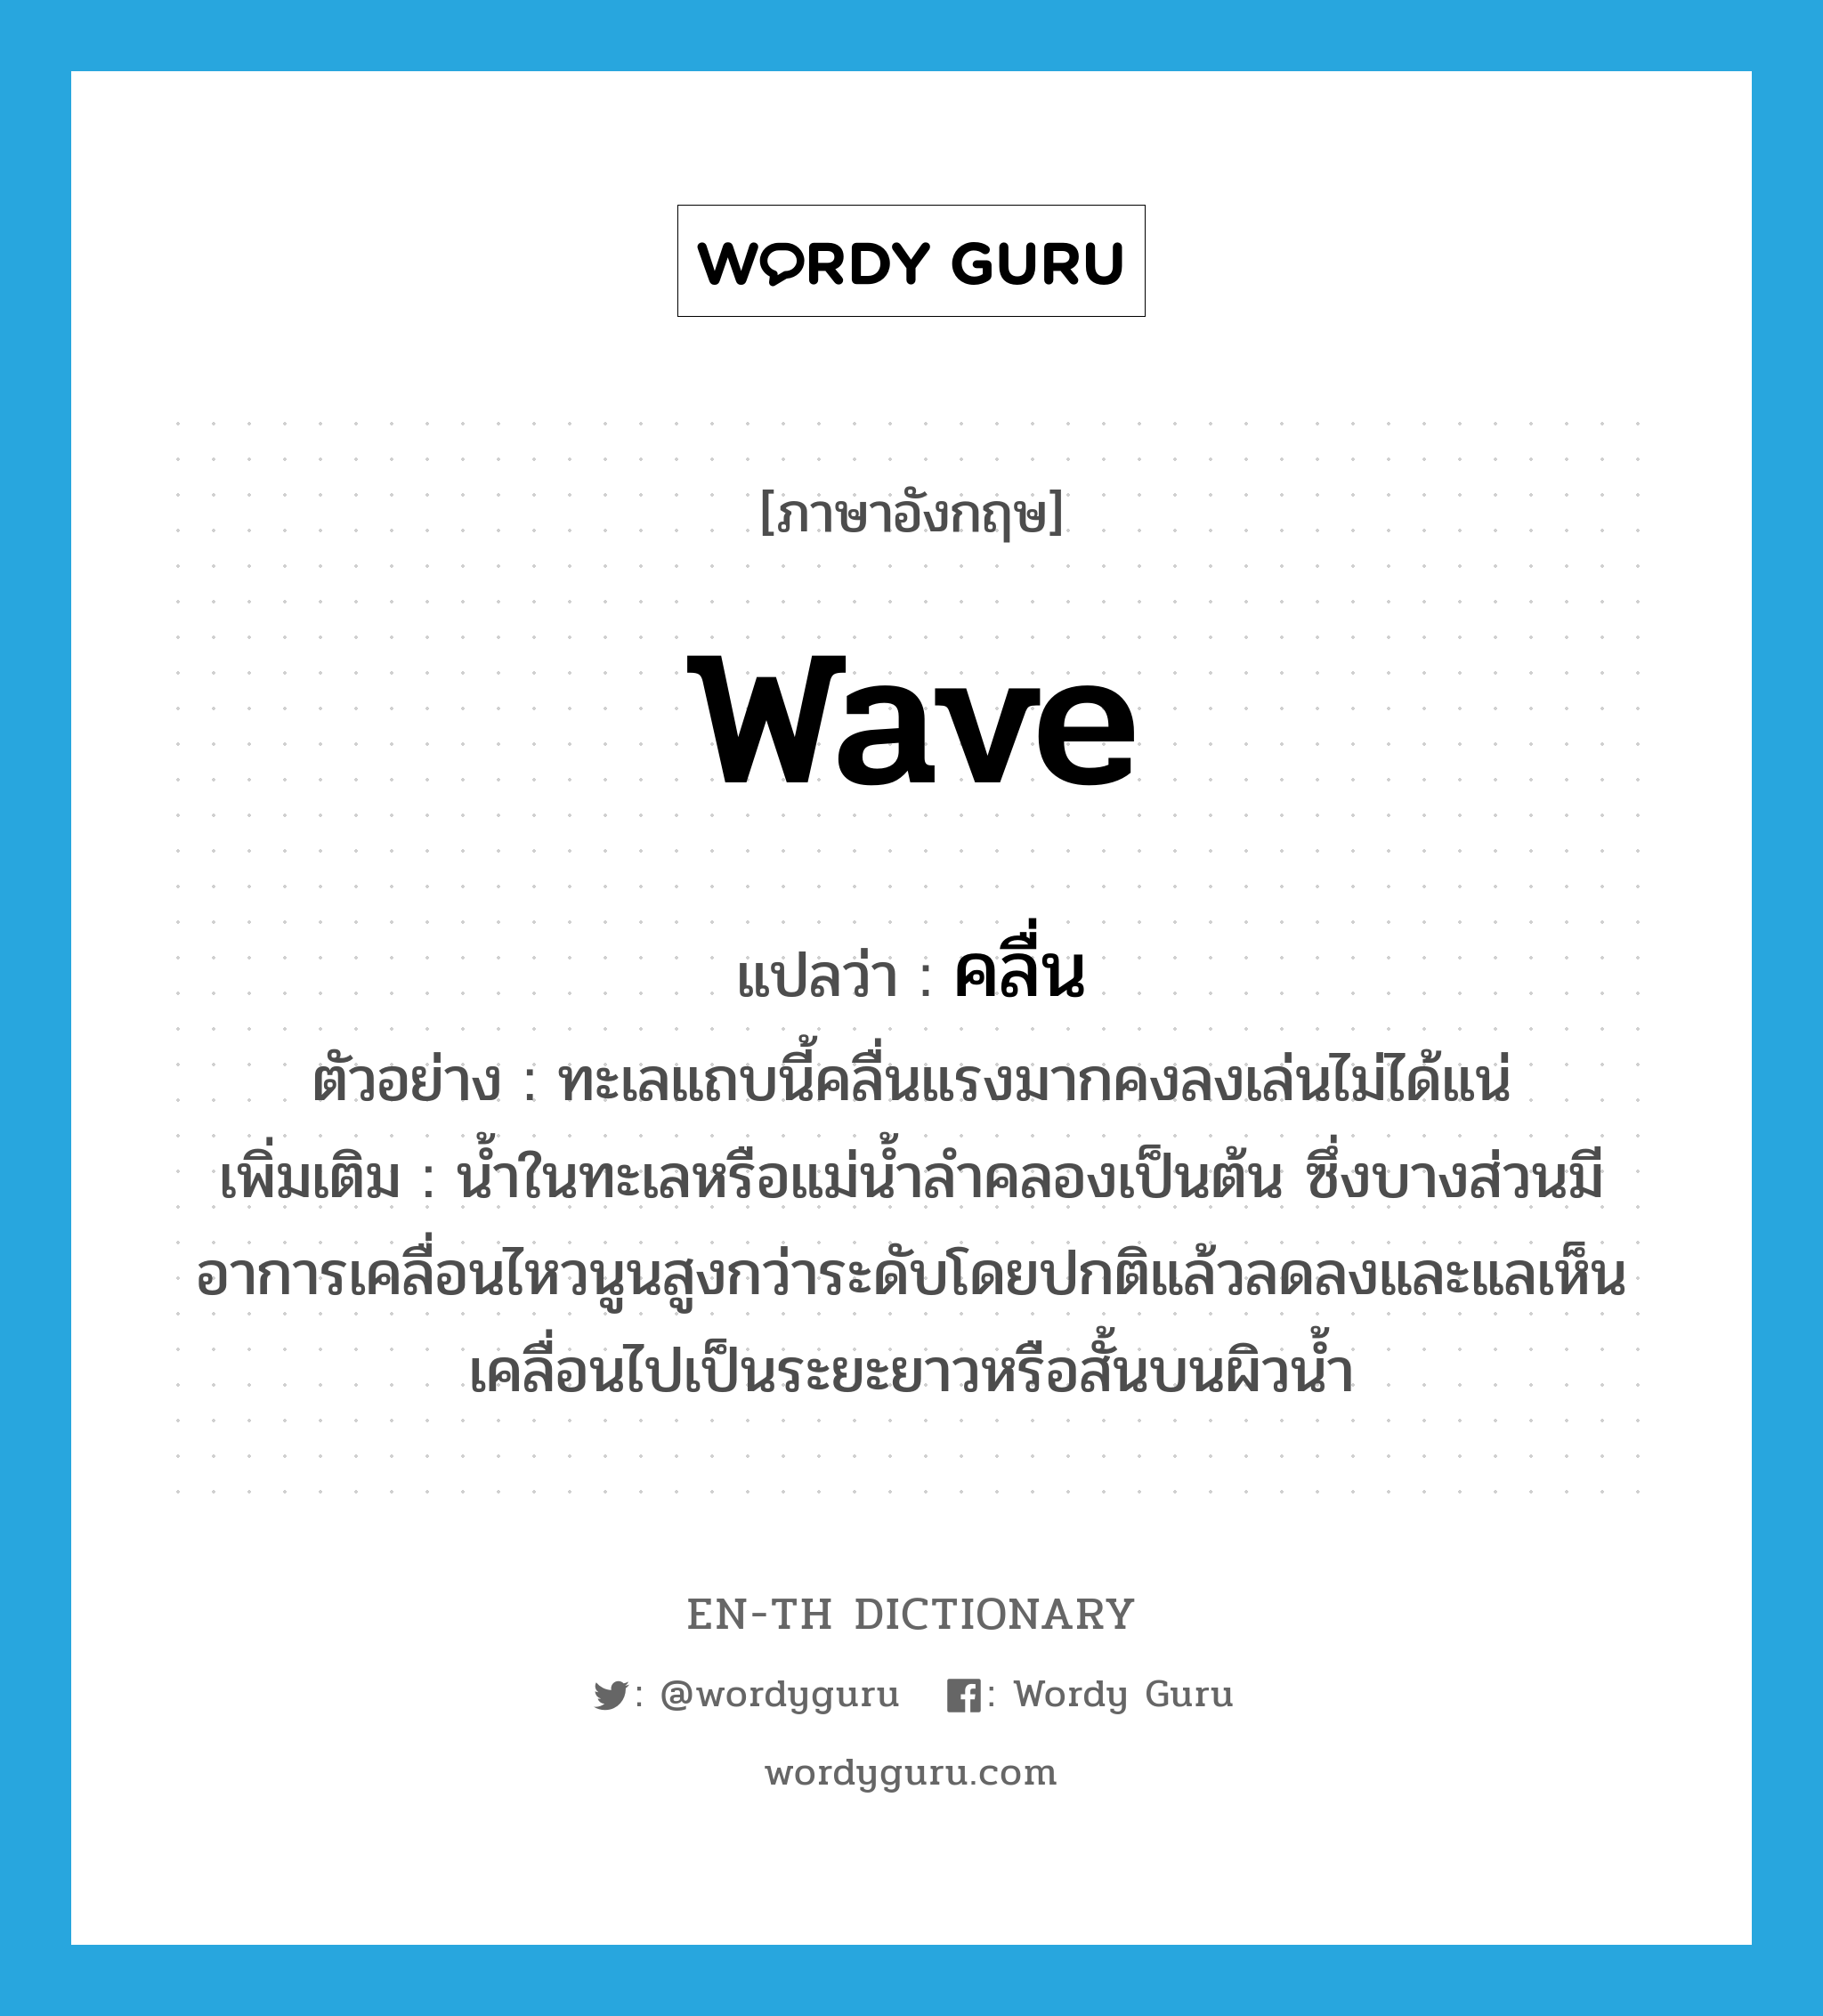 wave แปลว่า?, คำศัพท์ภาษาอังกฤษ wave แปลว่า คลื่น ประเภท N ตัวอย่าง ทะเลแถบนี้คลื่นแรงมากคงลงเล่นไม่ได้แน่ เพิ่มเติม น้ำในทะเลหรือแม่น้ำลำคลองเป็นต้น ซึ่งบางส่วนมีอาการเคลื่อนไหวนูนสูงกว่าระดับโดยปกติแล้วลดลงและแลเห็นเคลื่อนไปเป็นระยะยาวหรือสั้นบนผิวน้ำ หมวด N